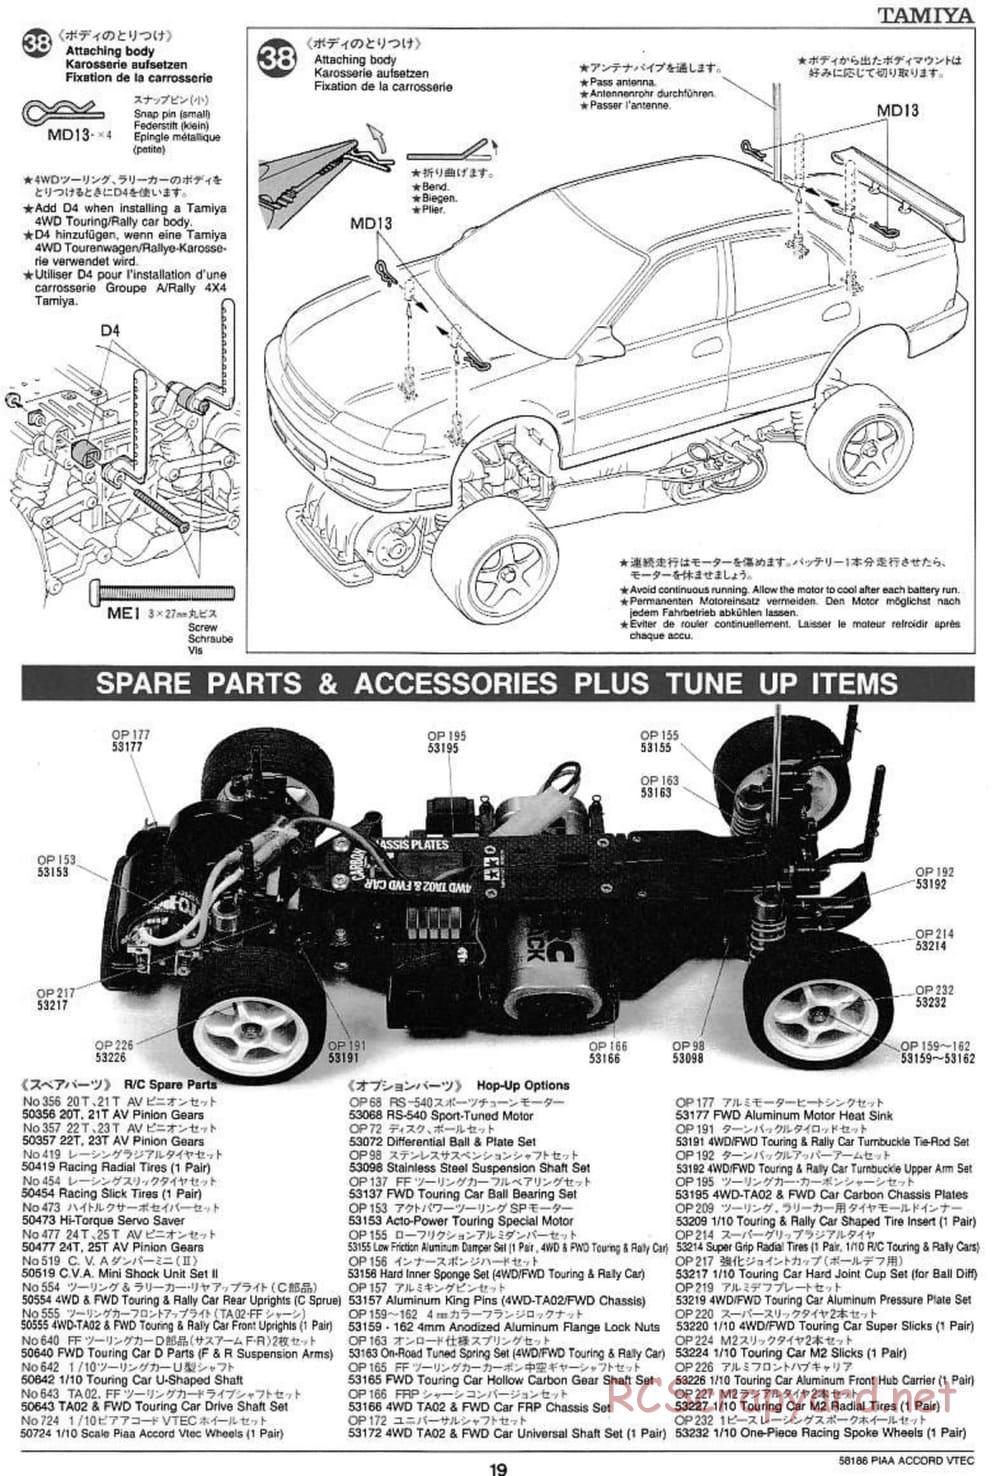 Tamiya - PIAA Accord VTEC - FF-01 Chassis - Manual - Page 19